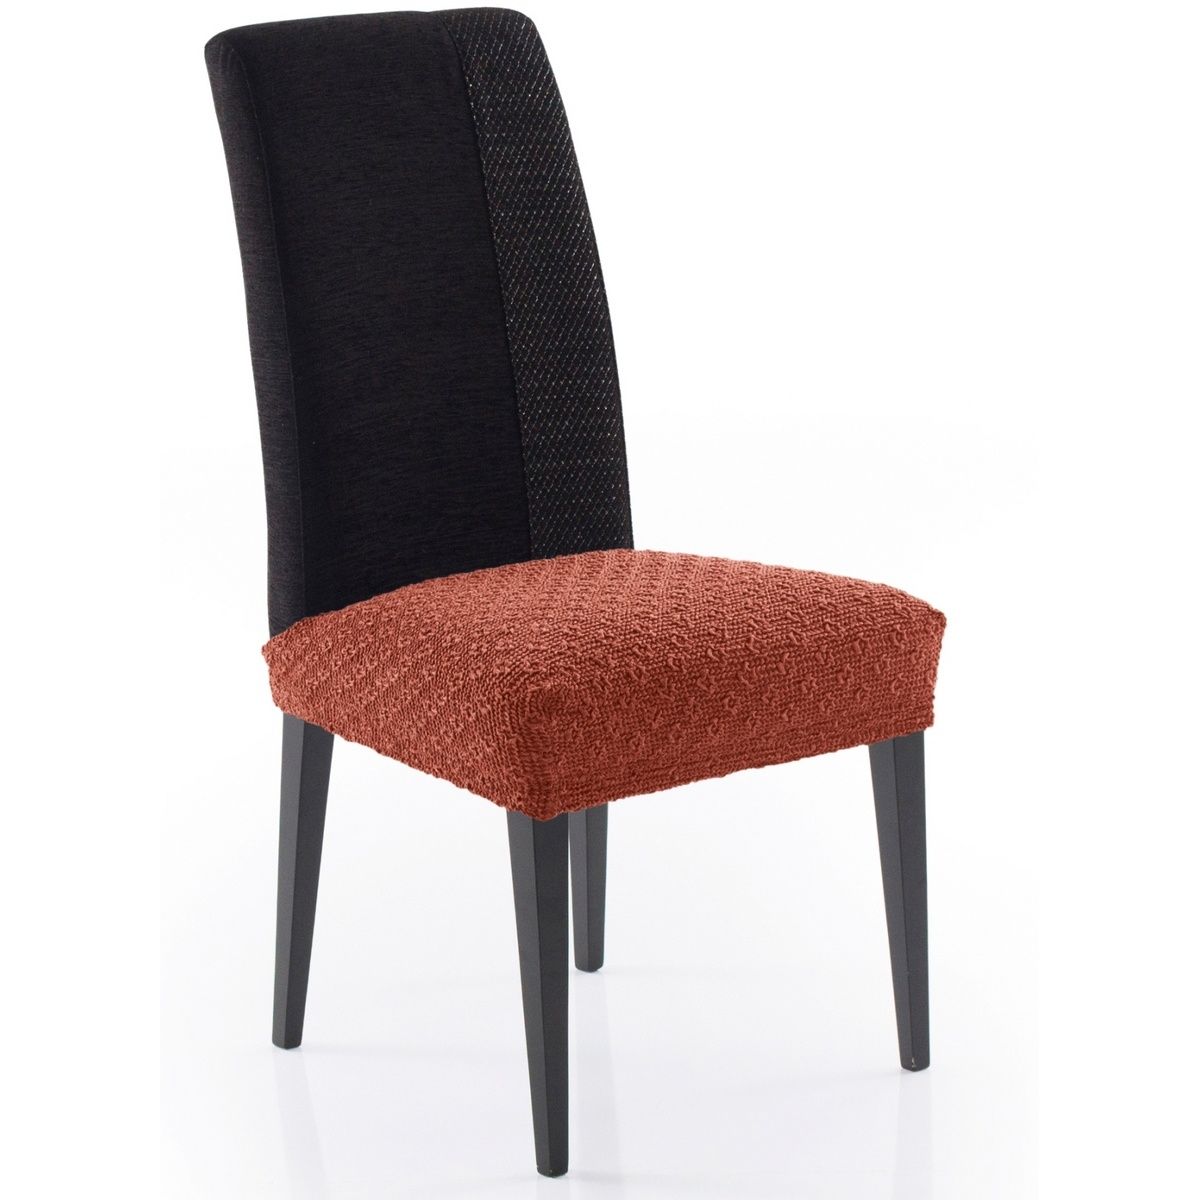 Forbyt Multielastický potah na sedák na židli Martin terakota, 50 x 60 cm, sada 2 ks - 4home.cz